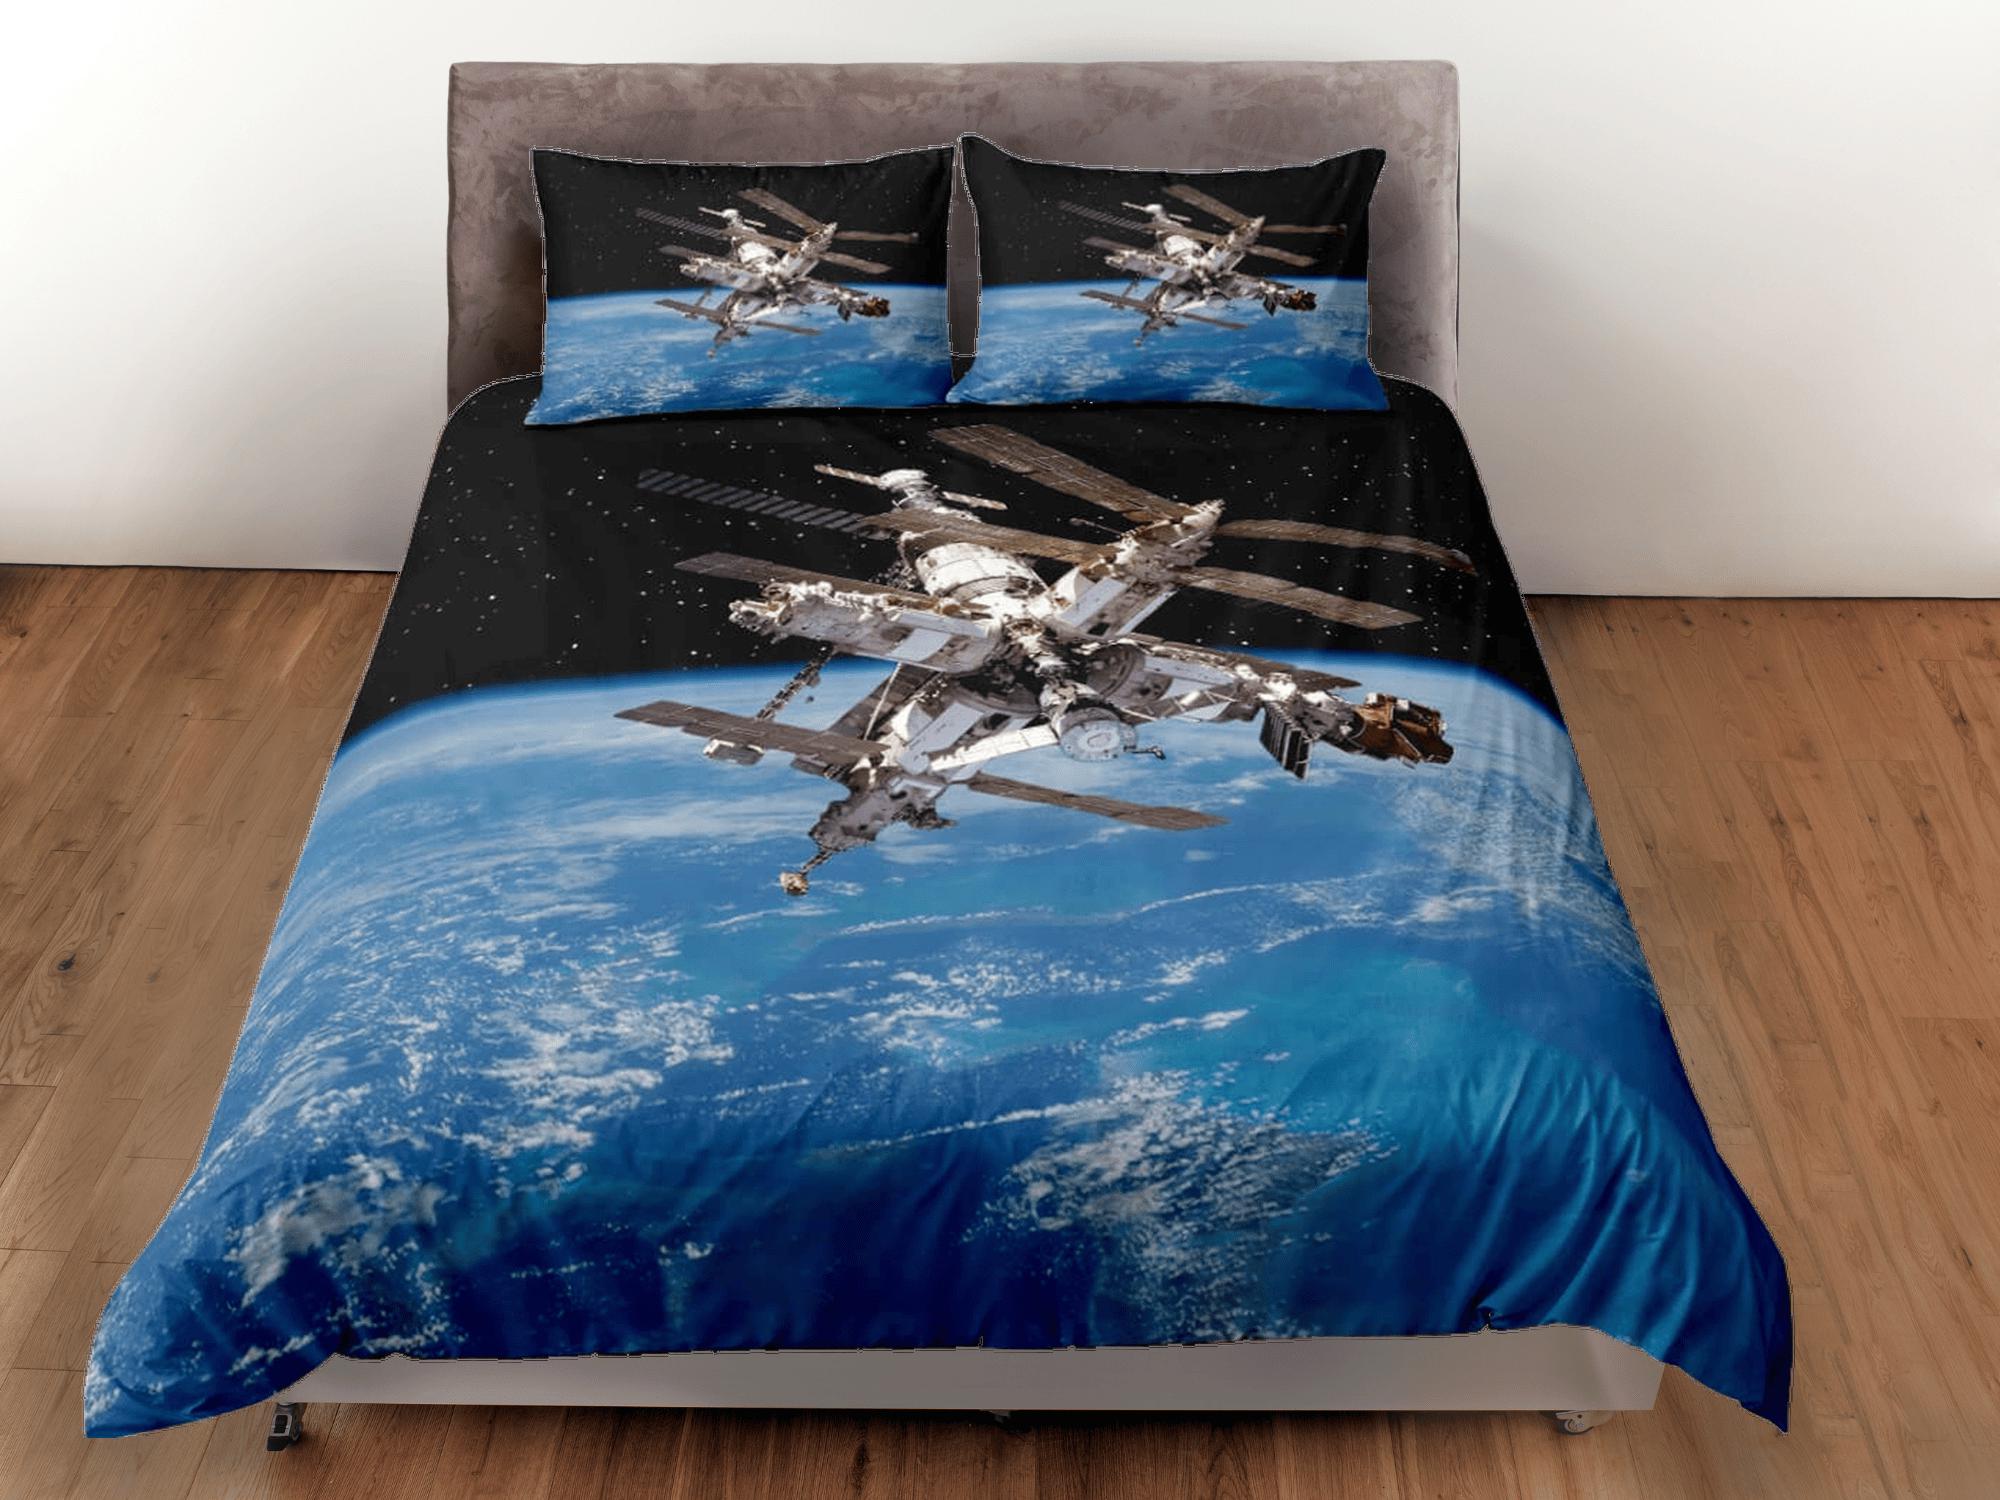 daintyduvet 3D satellite outer space bedding, galaxy bedding set full, cosmic duvet cover king, queen, dorm bedding, toddler bedding aesthetic duvet